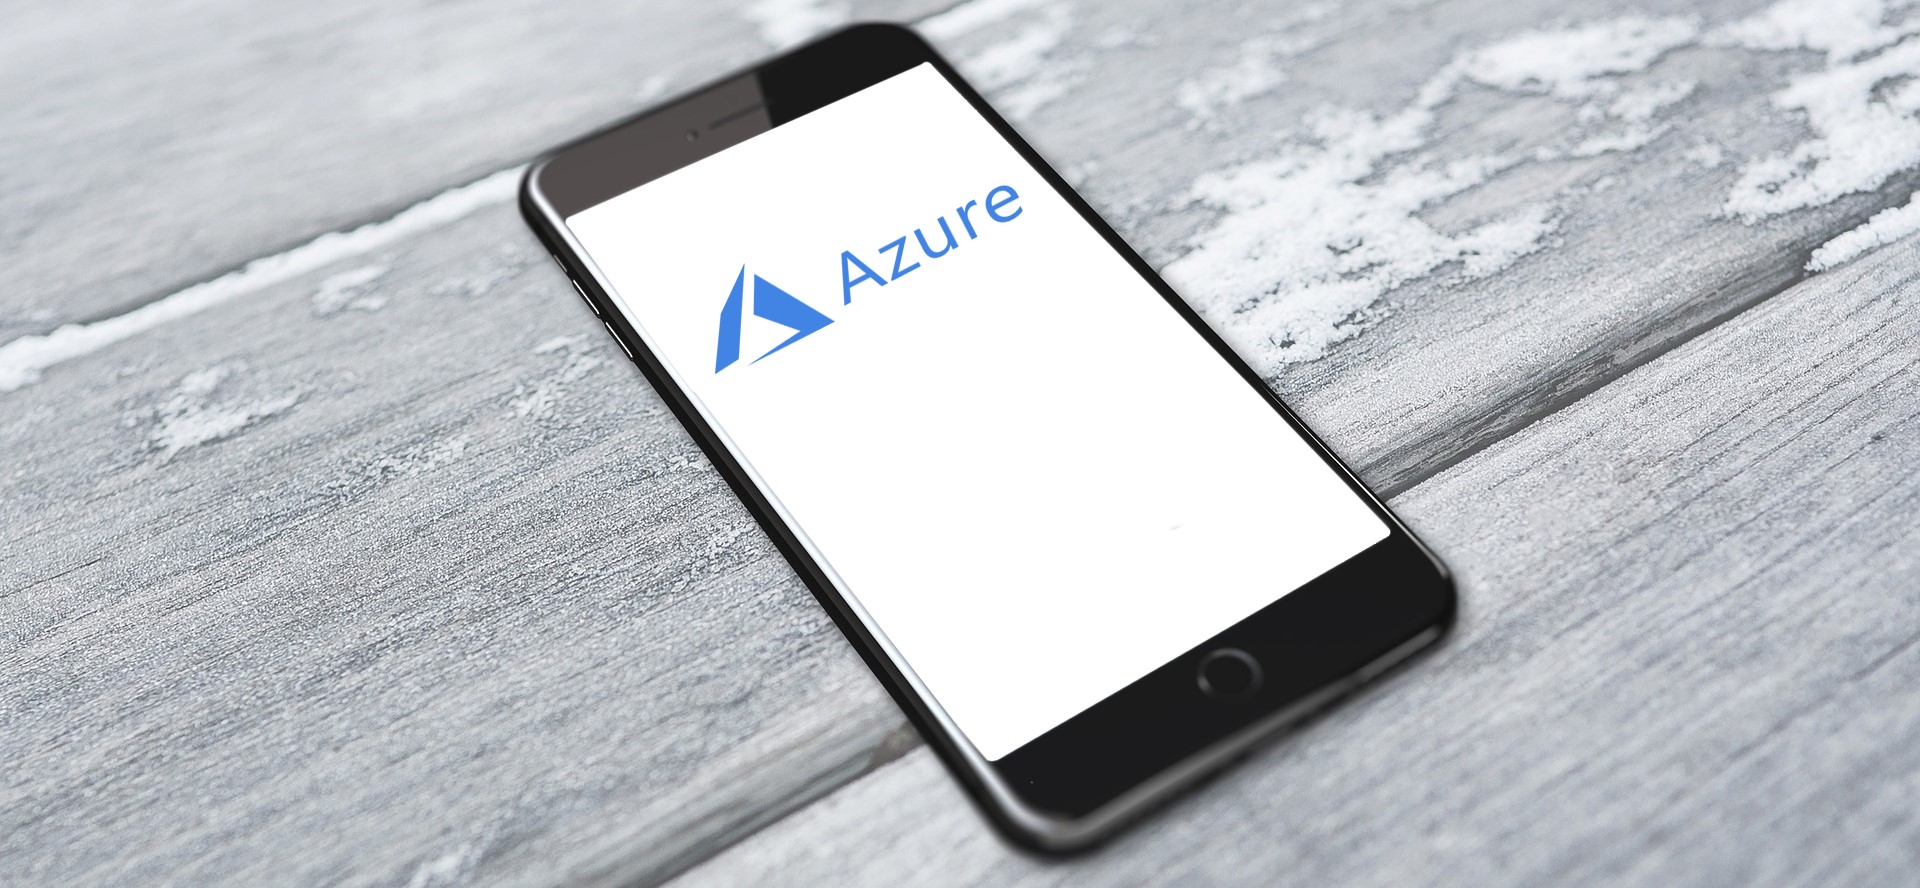 Azure logo on iphone